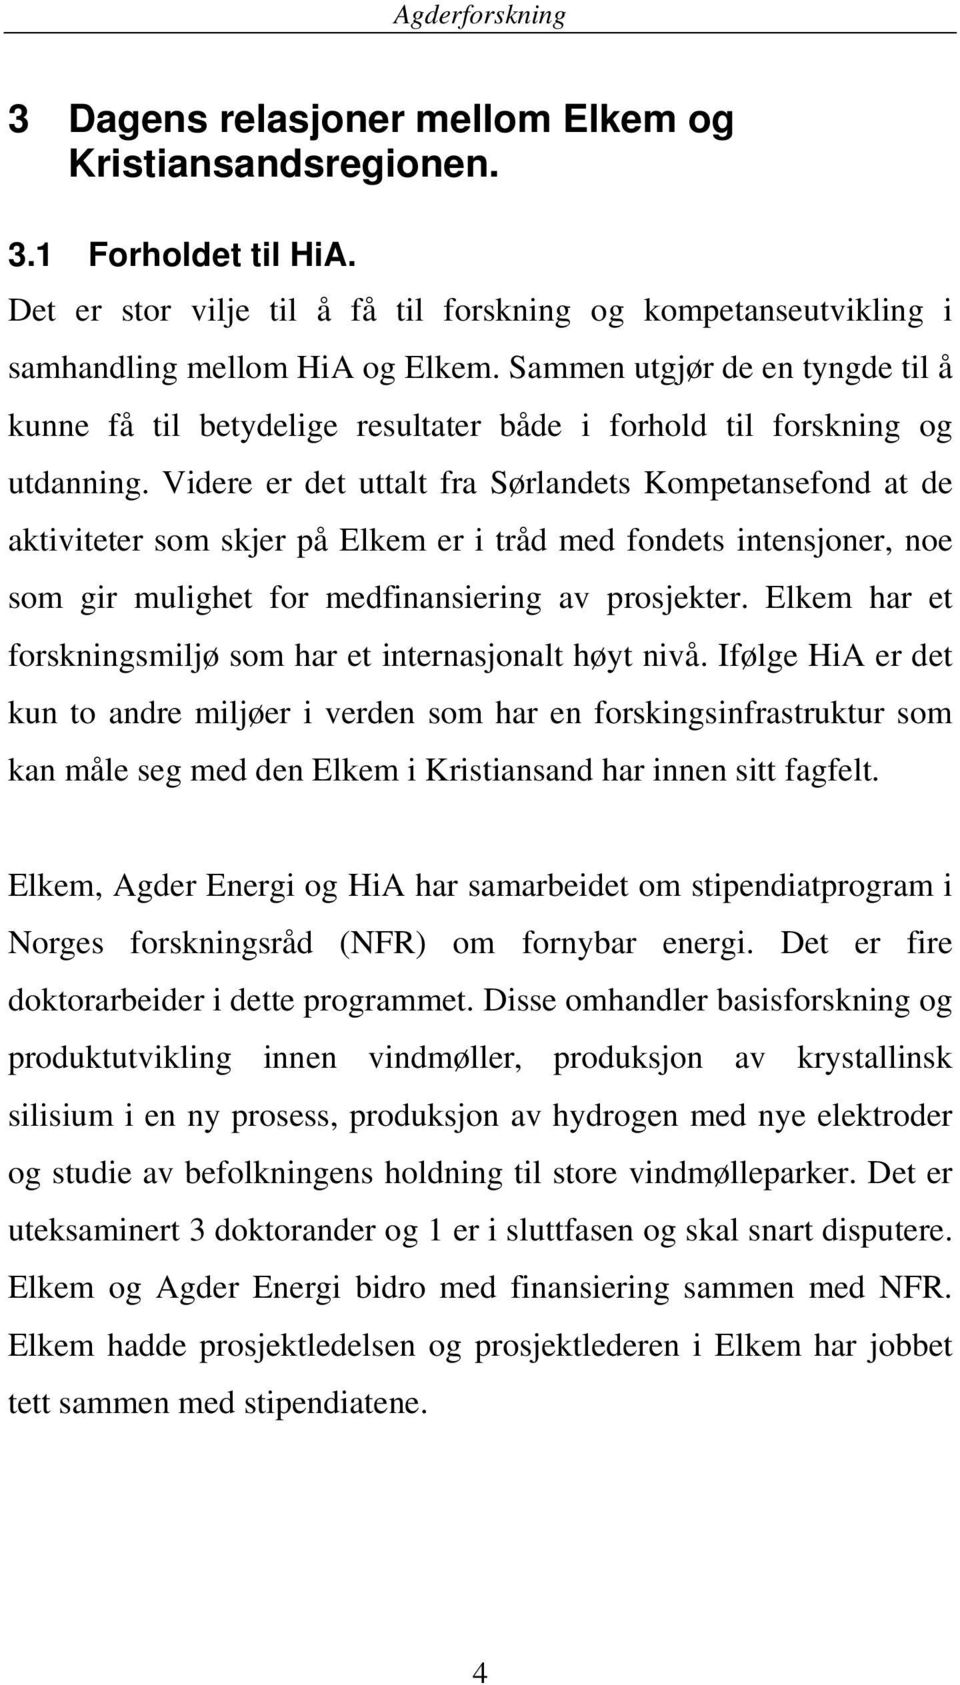 Videre er det uttalt fra Sørlandets Kompetansefond at de aktiviteter som skjer på Elkem er i tråd med fondets intensjoner, noe som gir mulighet for medfinansiering av prosjekter.